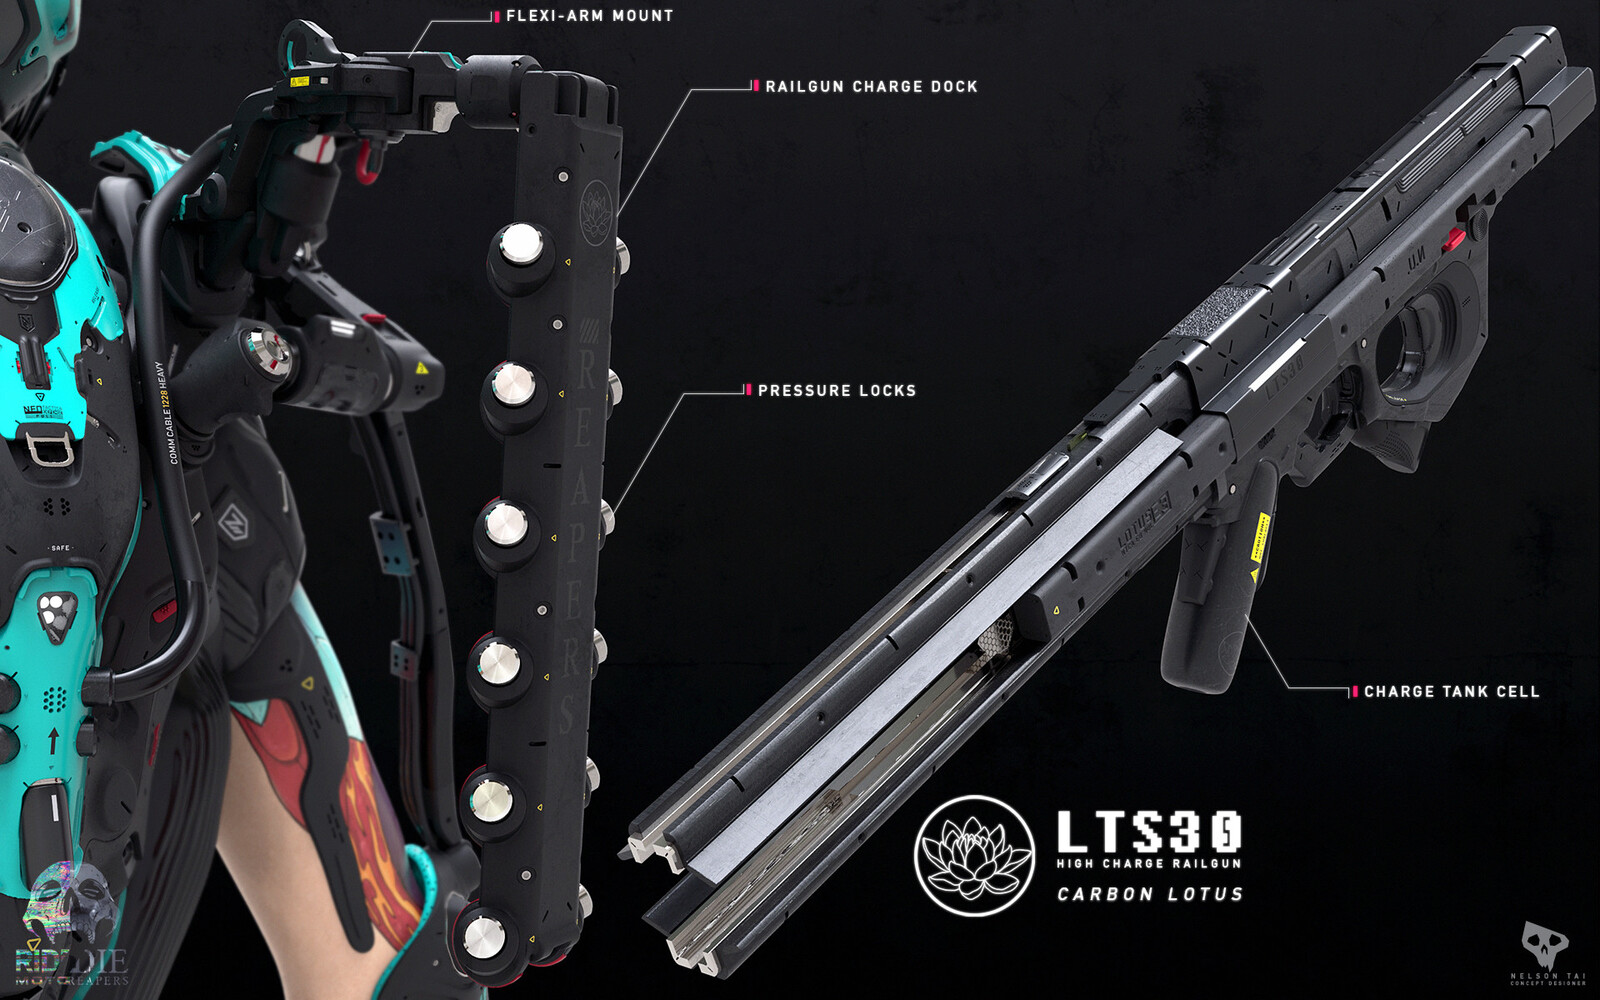 LTS30 - High charge rail gun